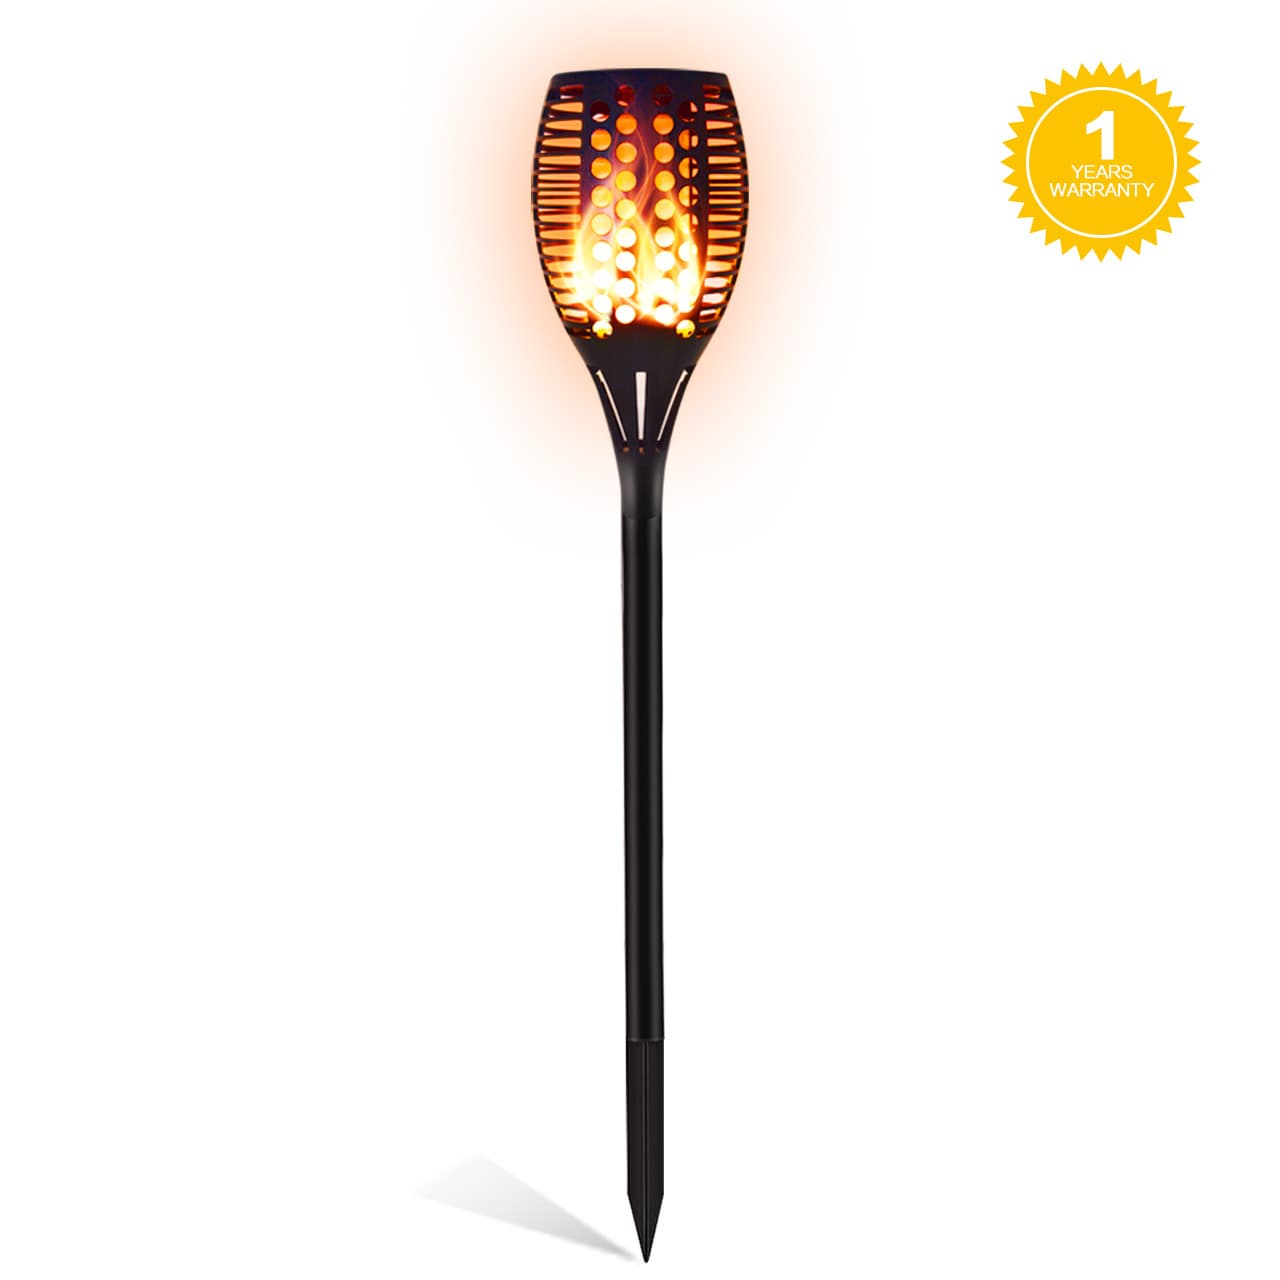 Garden Solar LED Flame Light